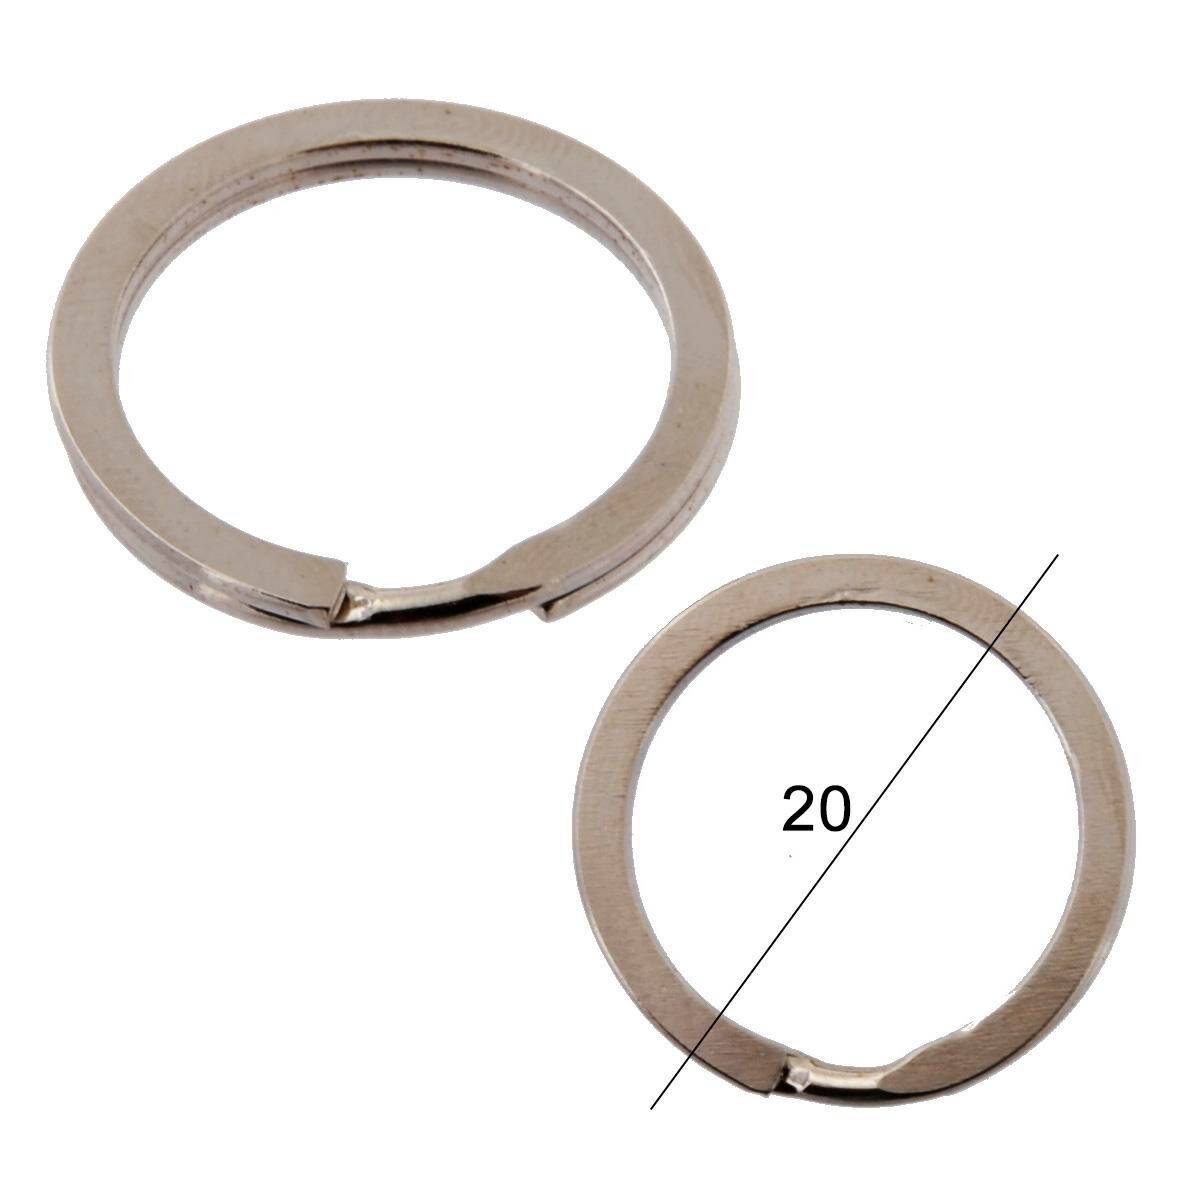 Key rings for keys WIS flat diameter 20mm